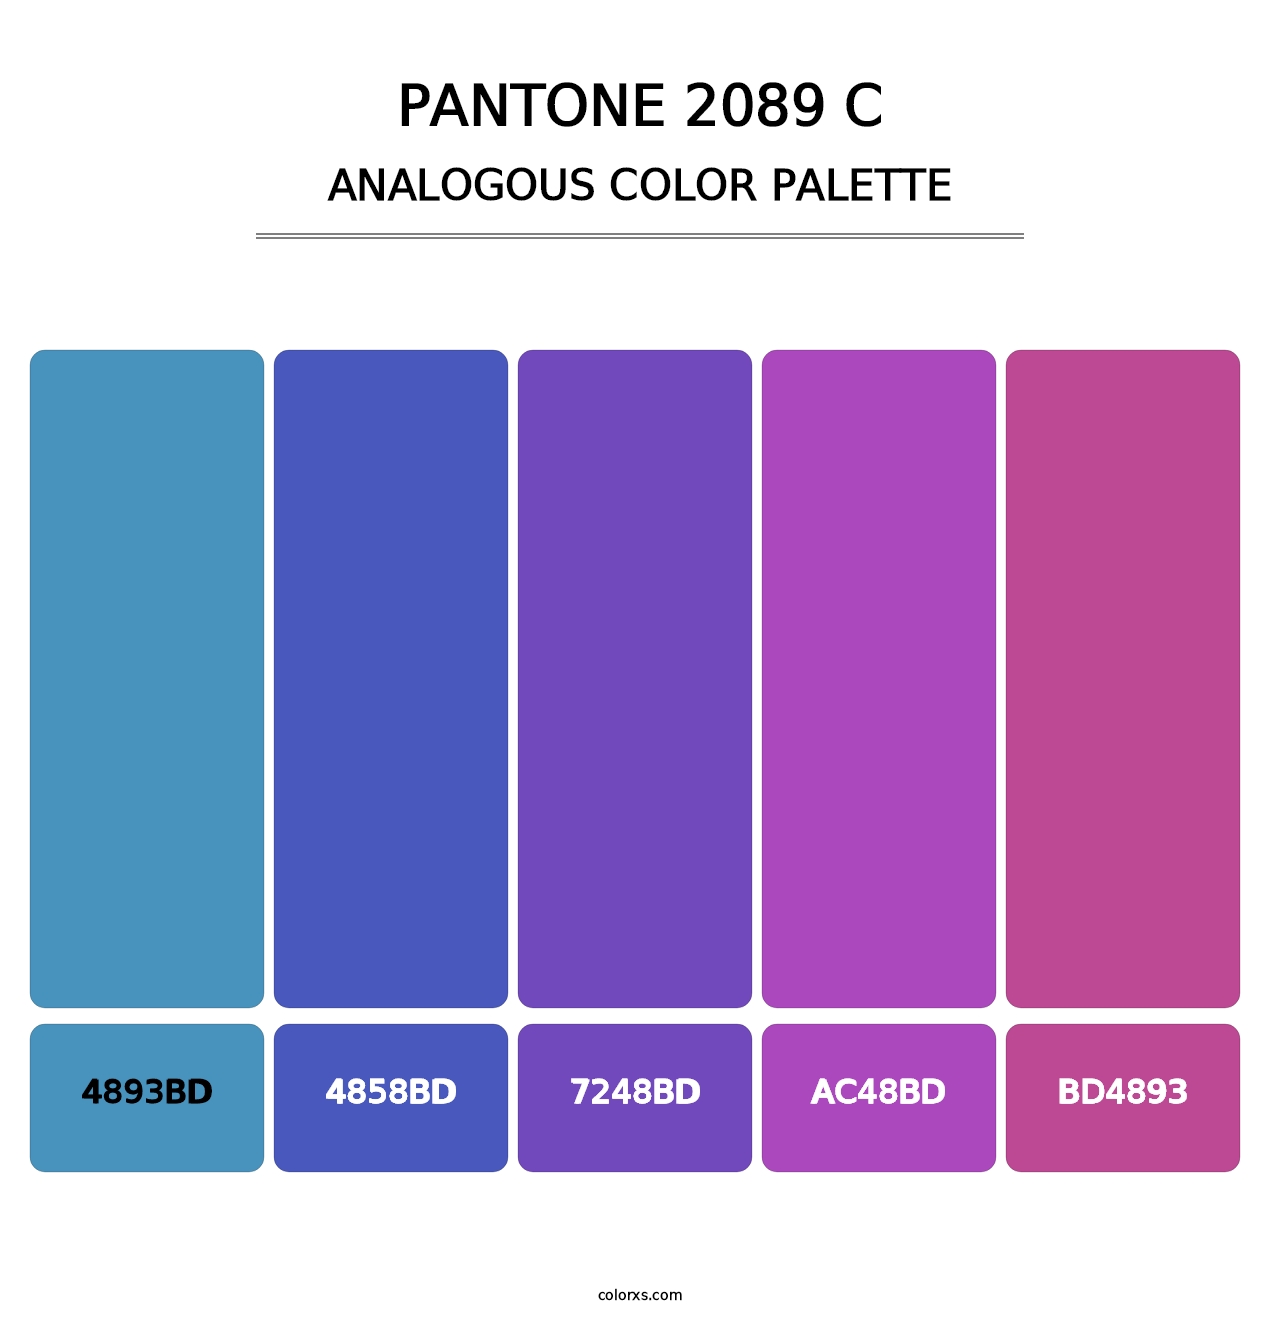 PANTONE 2089 C - Analogous Color Palette